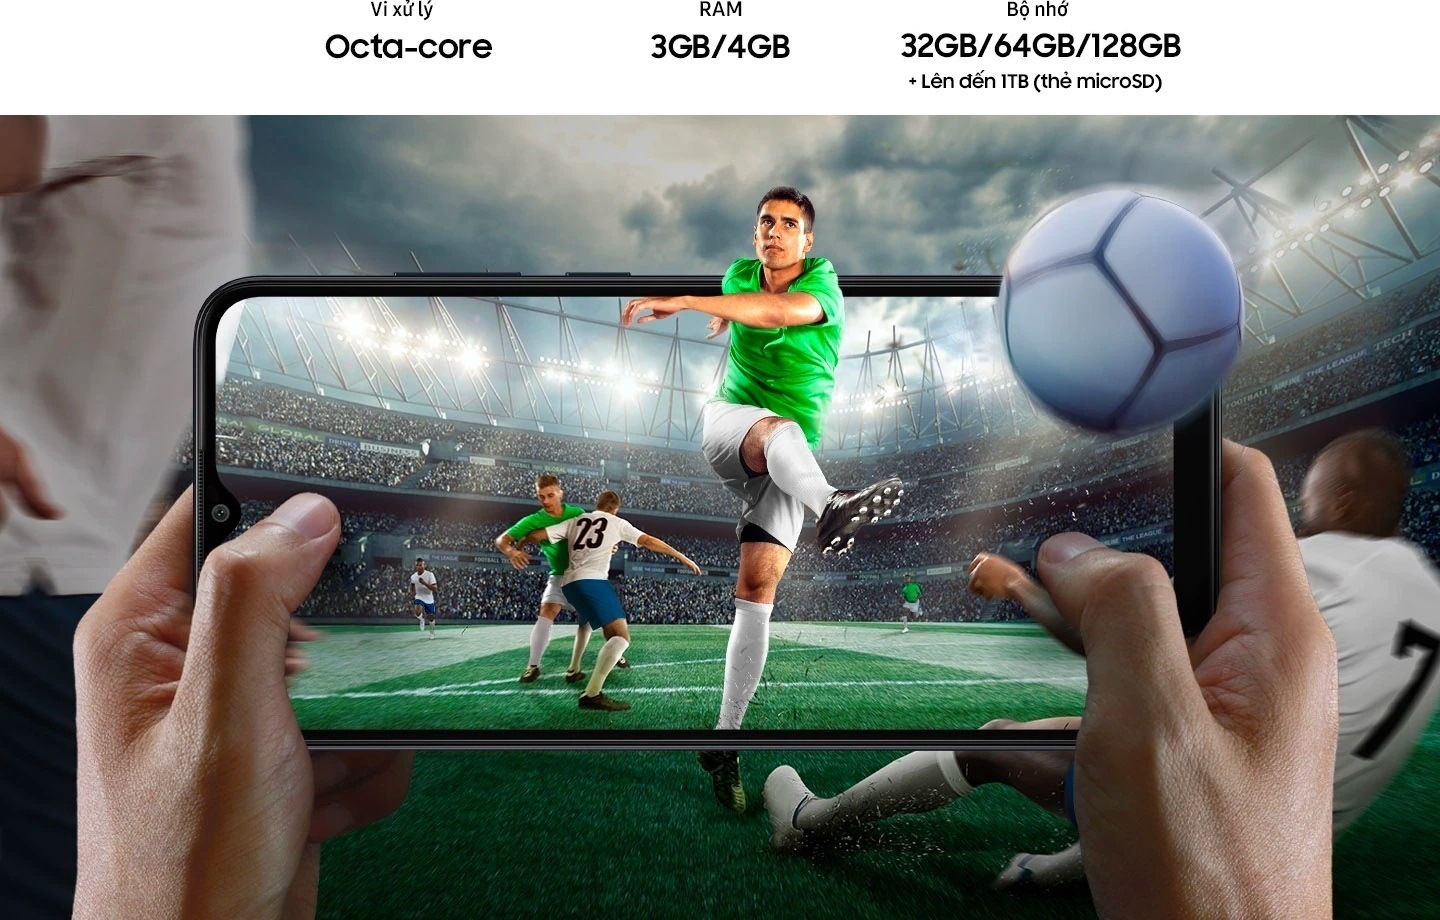 Hình ảnh một cầu thủ bóng đá, đang đá bóng tại sân vận động trong trận đấu bóng đá, được hiển thị trên Galaxy A04e theo chiều ngang và được giữ bằng hai tay. Người chơi, quả bóng và vùng còn lại của khung cảnh mở rộng ra bên ngoài màn hình của thiết bị theo mọi hướng. Các lựa chọn bộ nhớ bao gồm 32GB, 64GB và 128GB, và bộ nhớ ngoài lên đến 1TB.